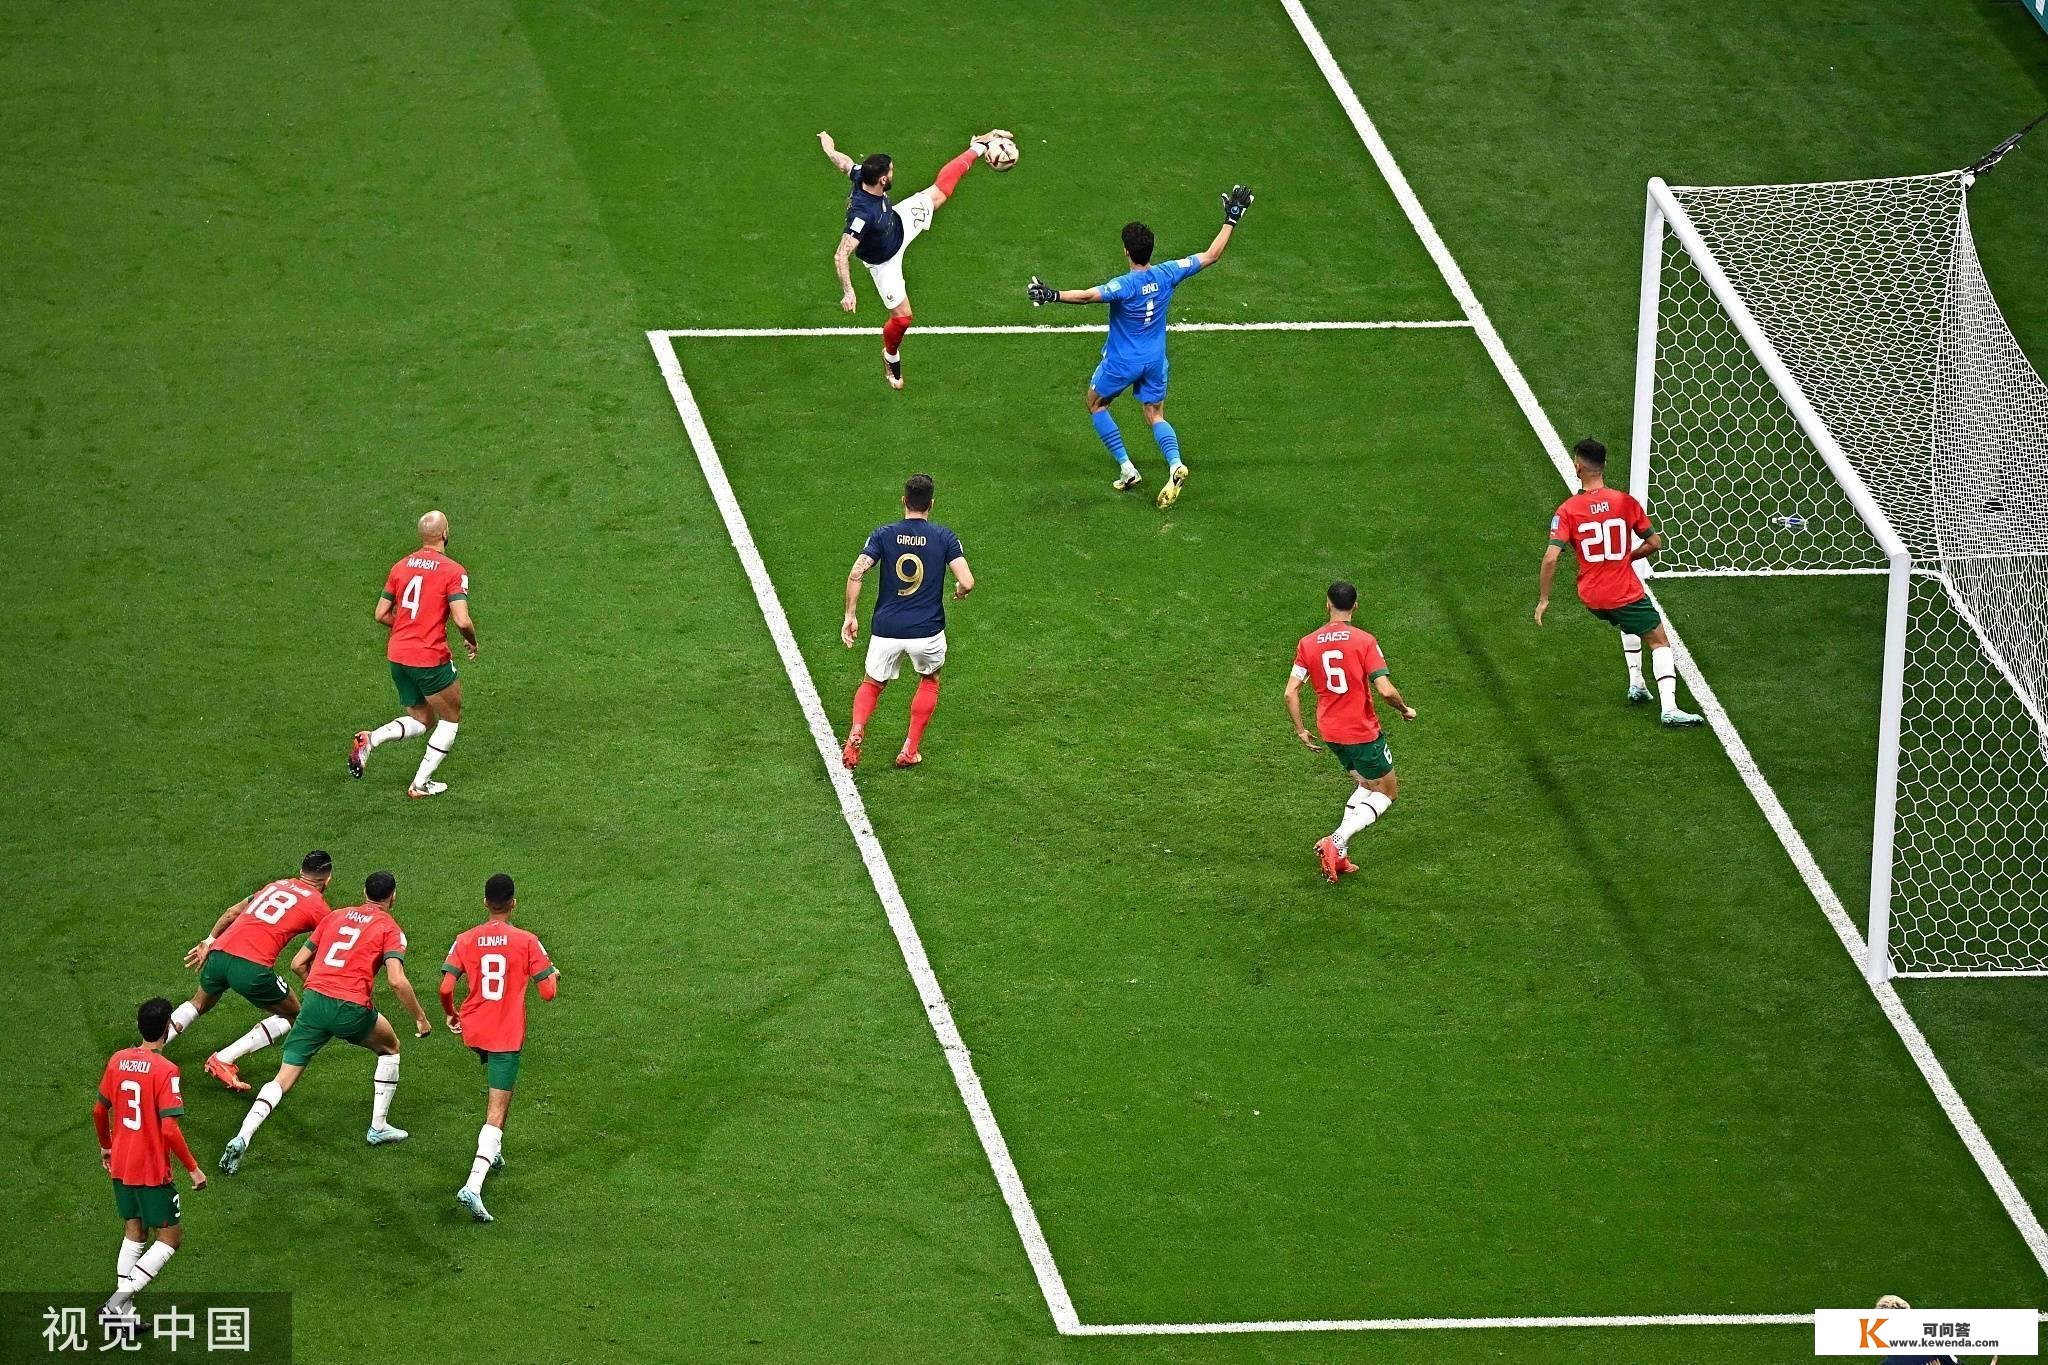 世界杯-特奥凌空斩破门穆阿尼立功 法国2-0摩洛哥进决赛